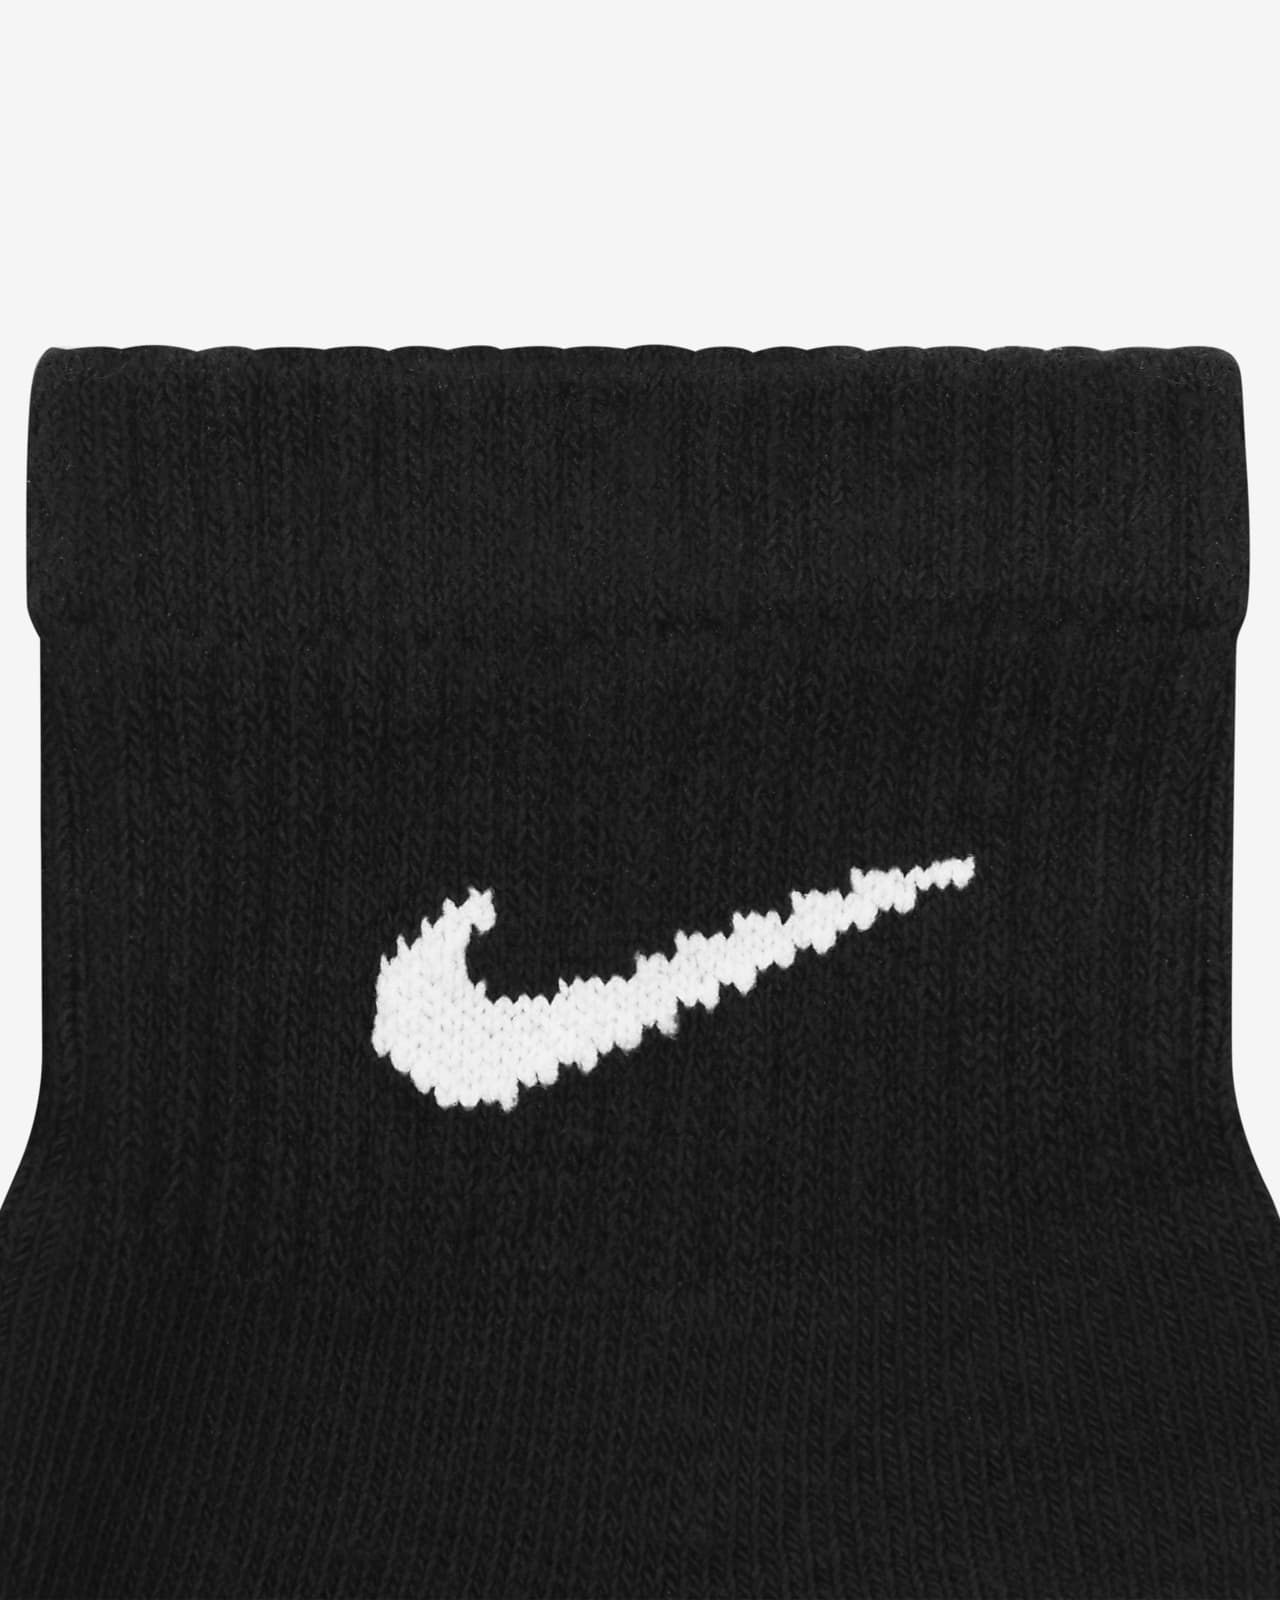 Black Mens Xtra Large Quarter Socks 6 Pairs, Nike